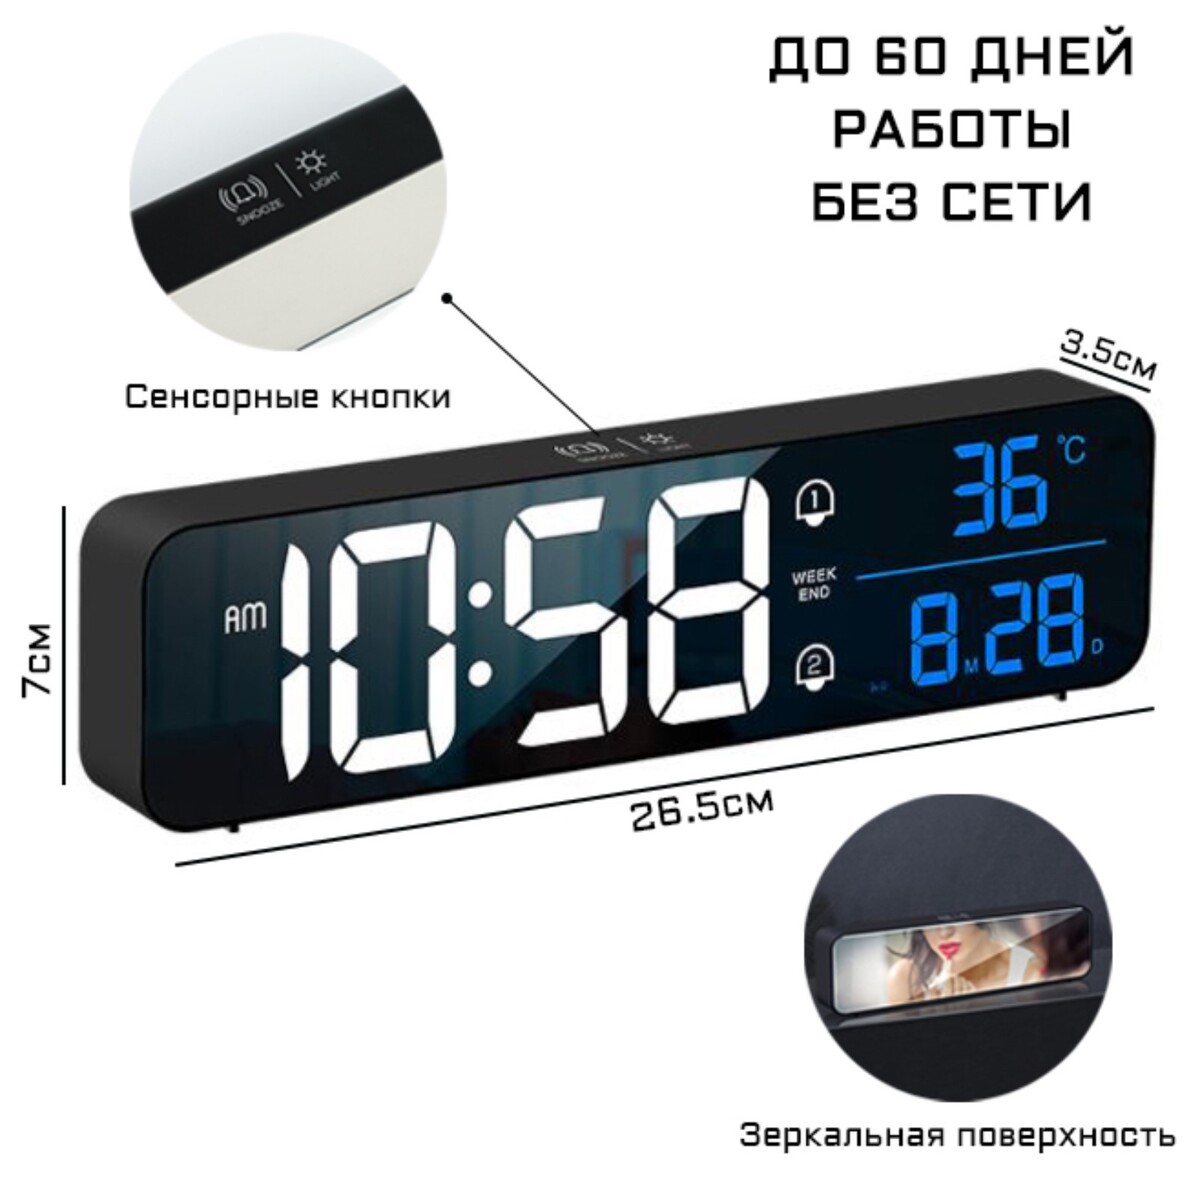 Часы электронные настольные с будильником, с подвесом, 2400 мач, 3.5 х 7 х 26.5 см часы электронные настенные настольные с будильником 15 x 36 x 3 см usb